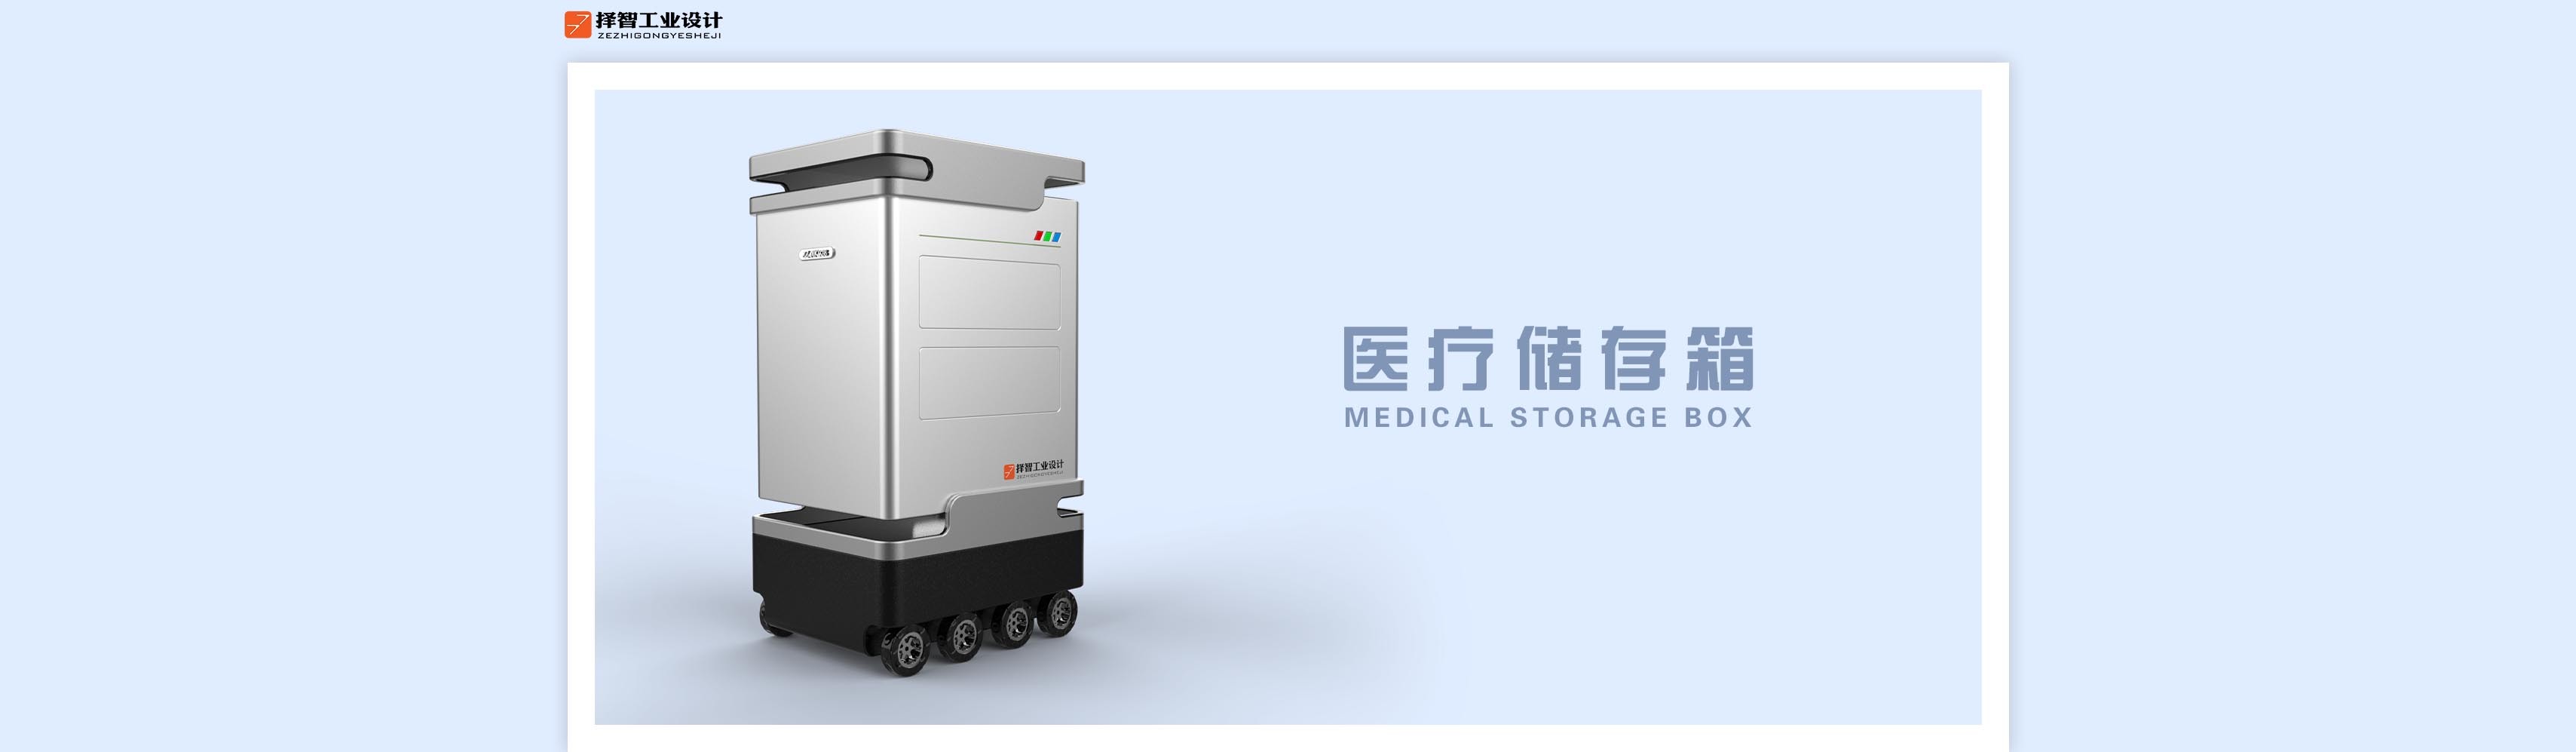 上海苏州产品设计工业产品外观设计结构设计医疗储存运输车